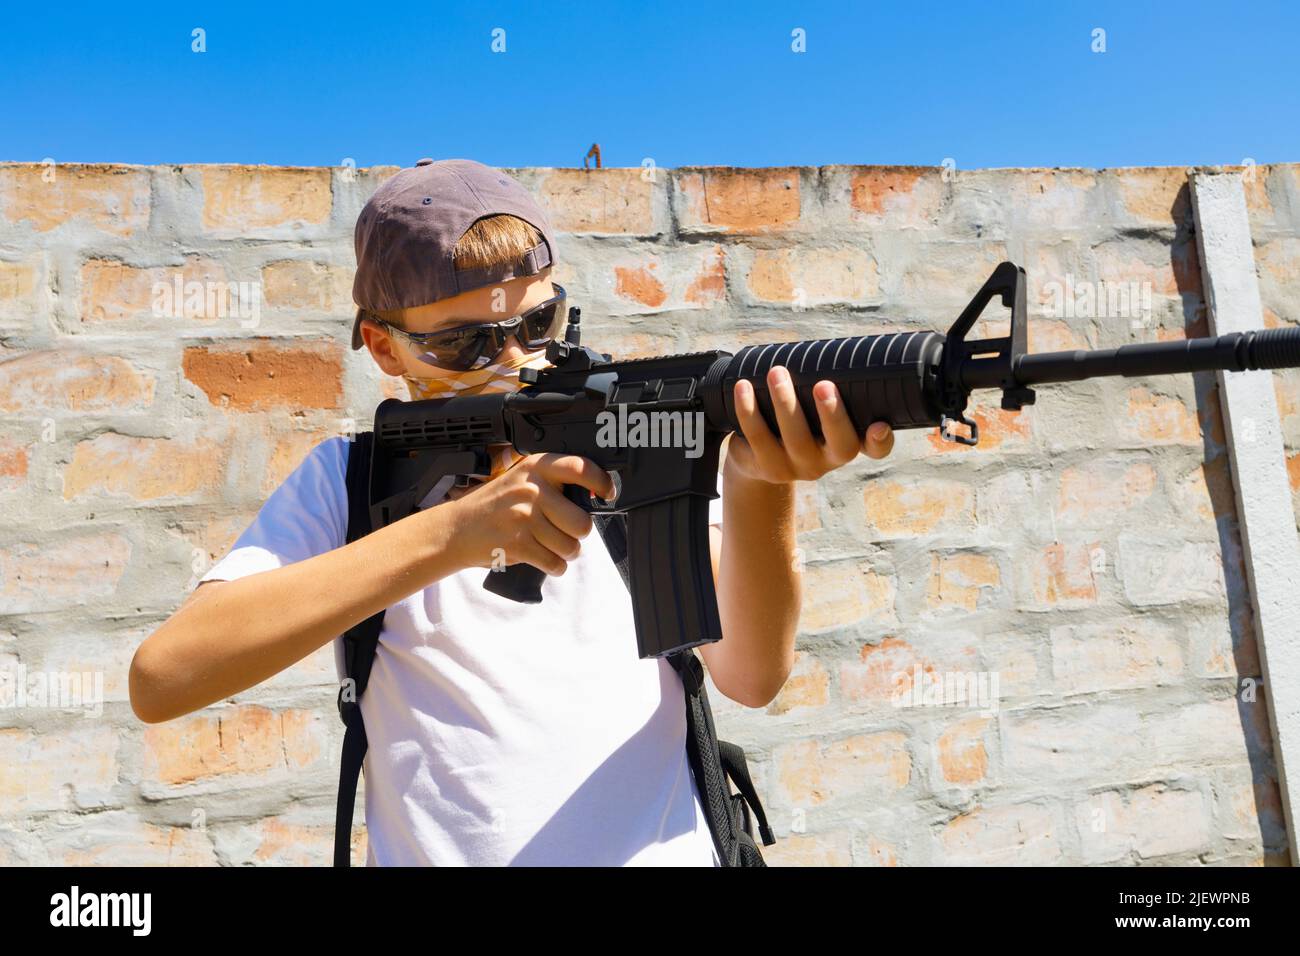 Ein Kind, das sein automatisches M4A1 Gewehr anvisieren will. Konzept für Schulaufnahmen. Stockfoto